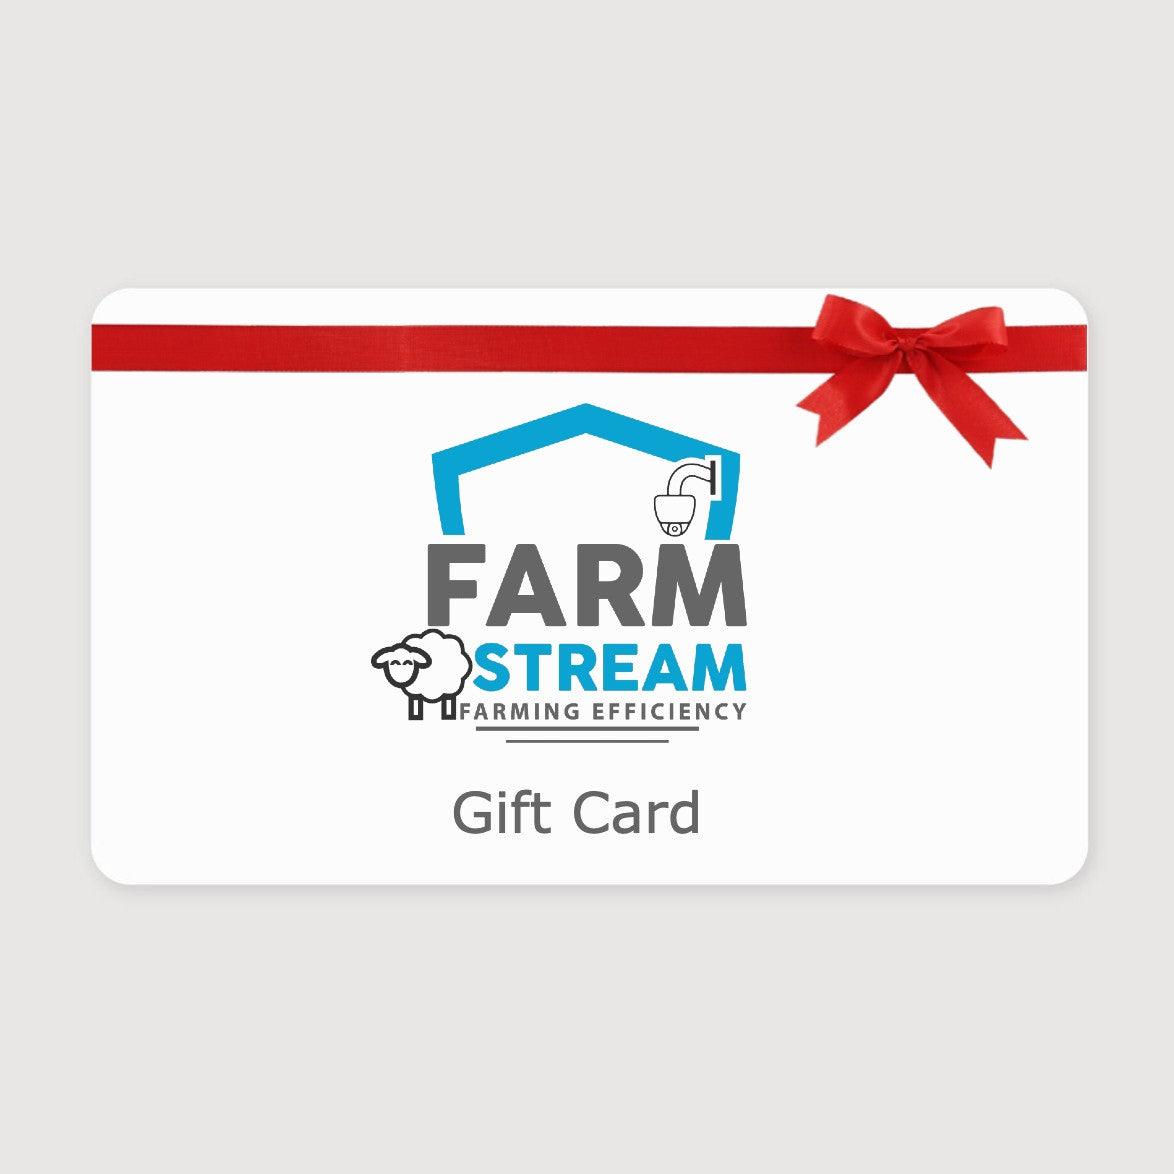 Farmstream gift card - Farmstream